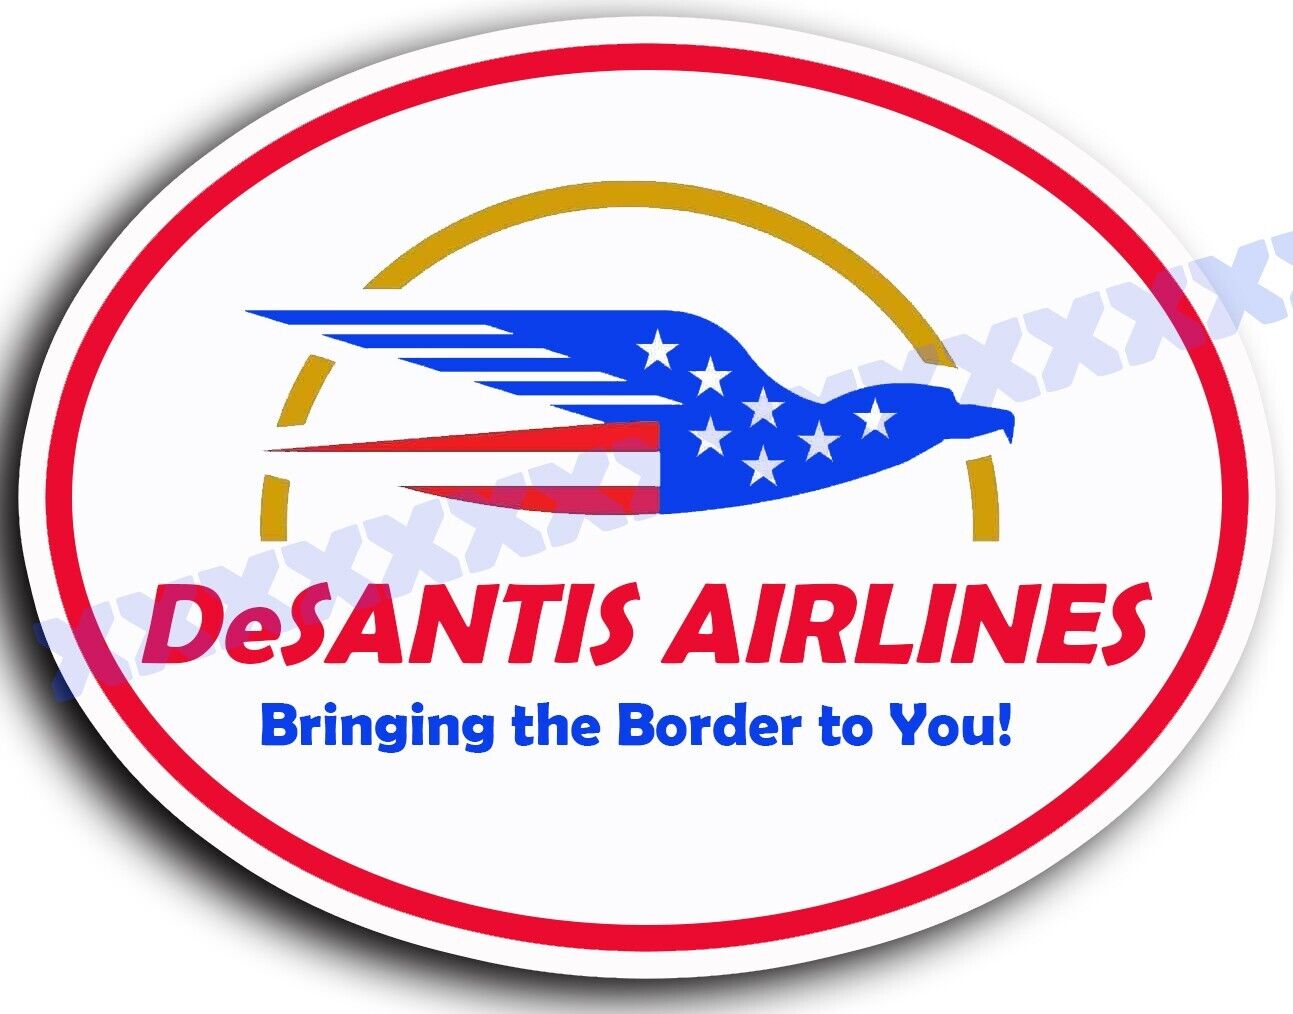 Ron DeSantis 2024, DeSantis Airlines, 5